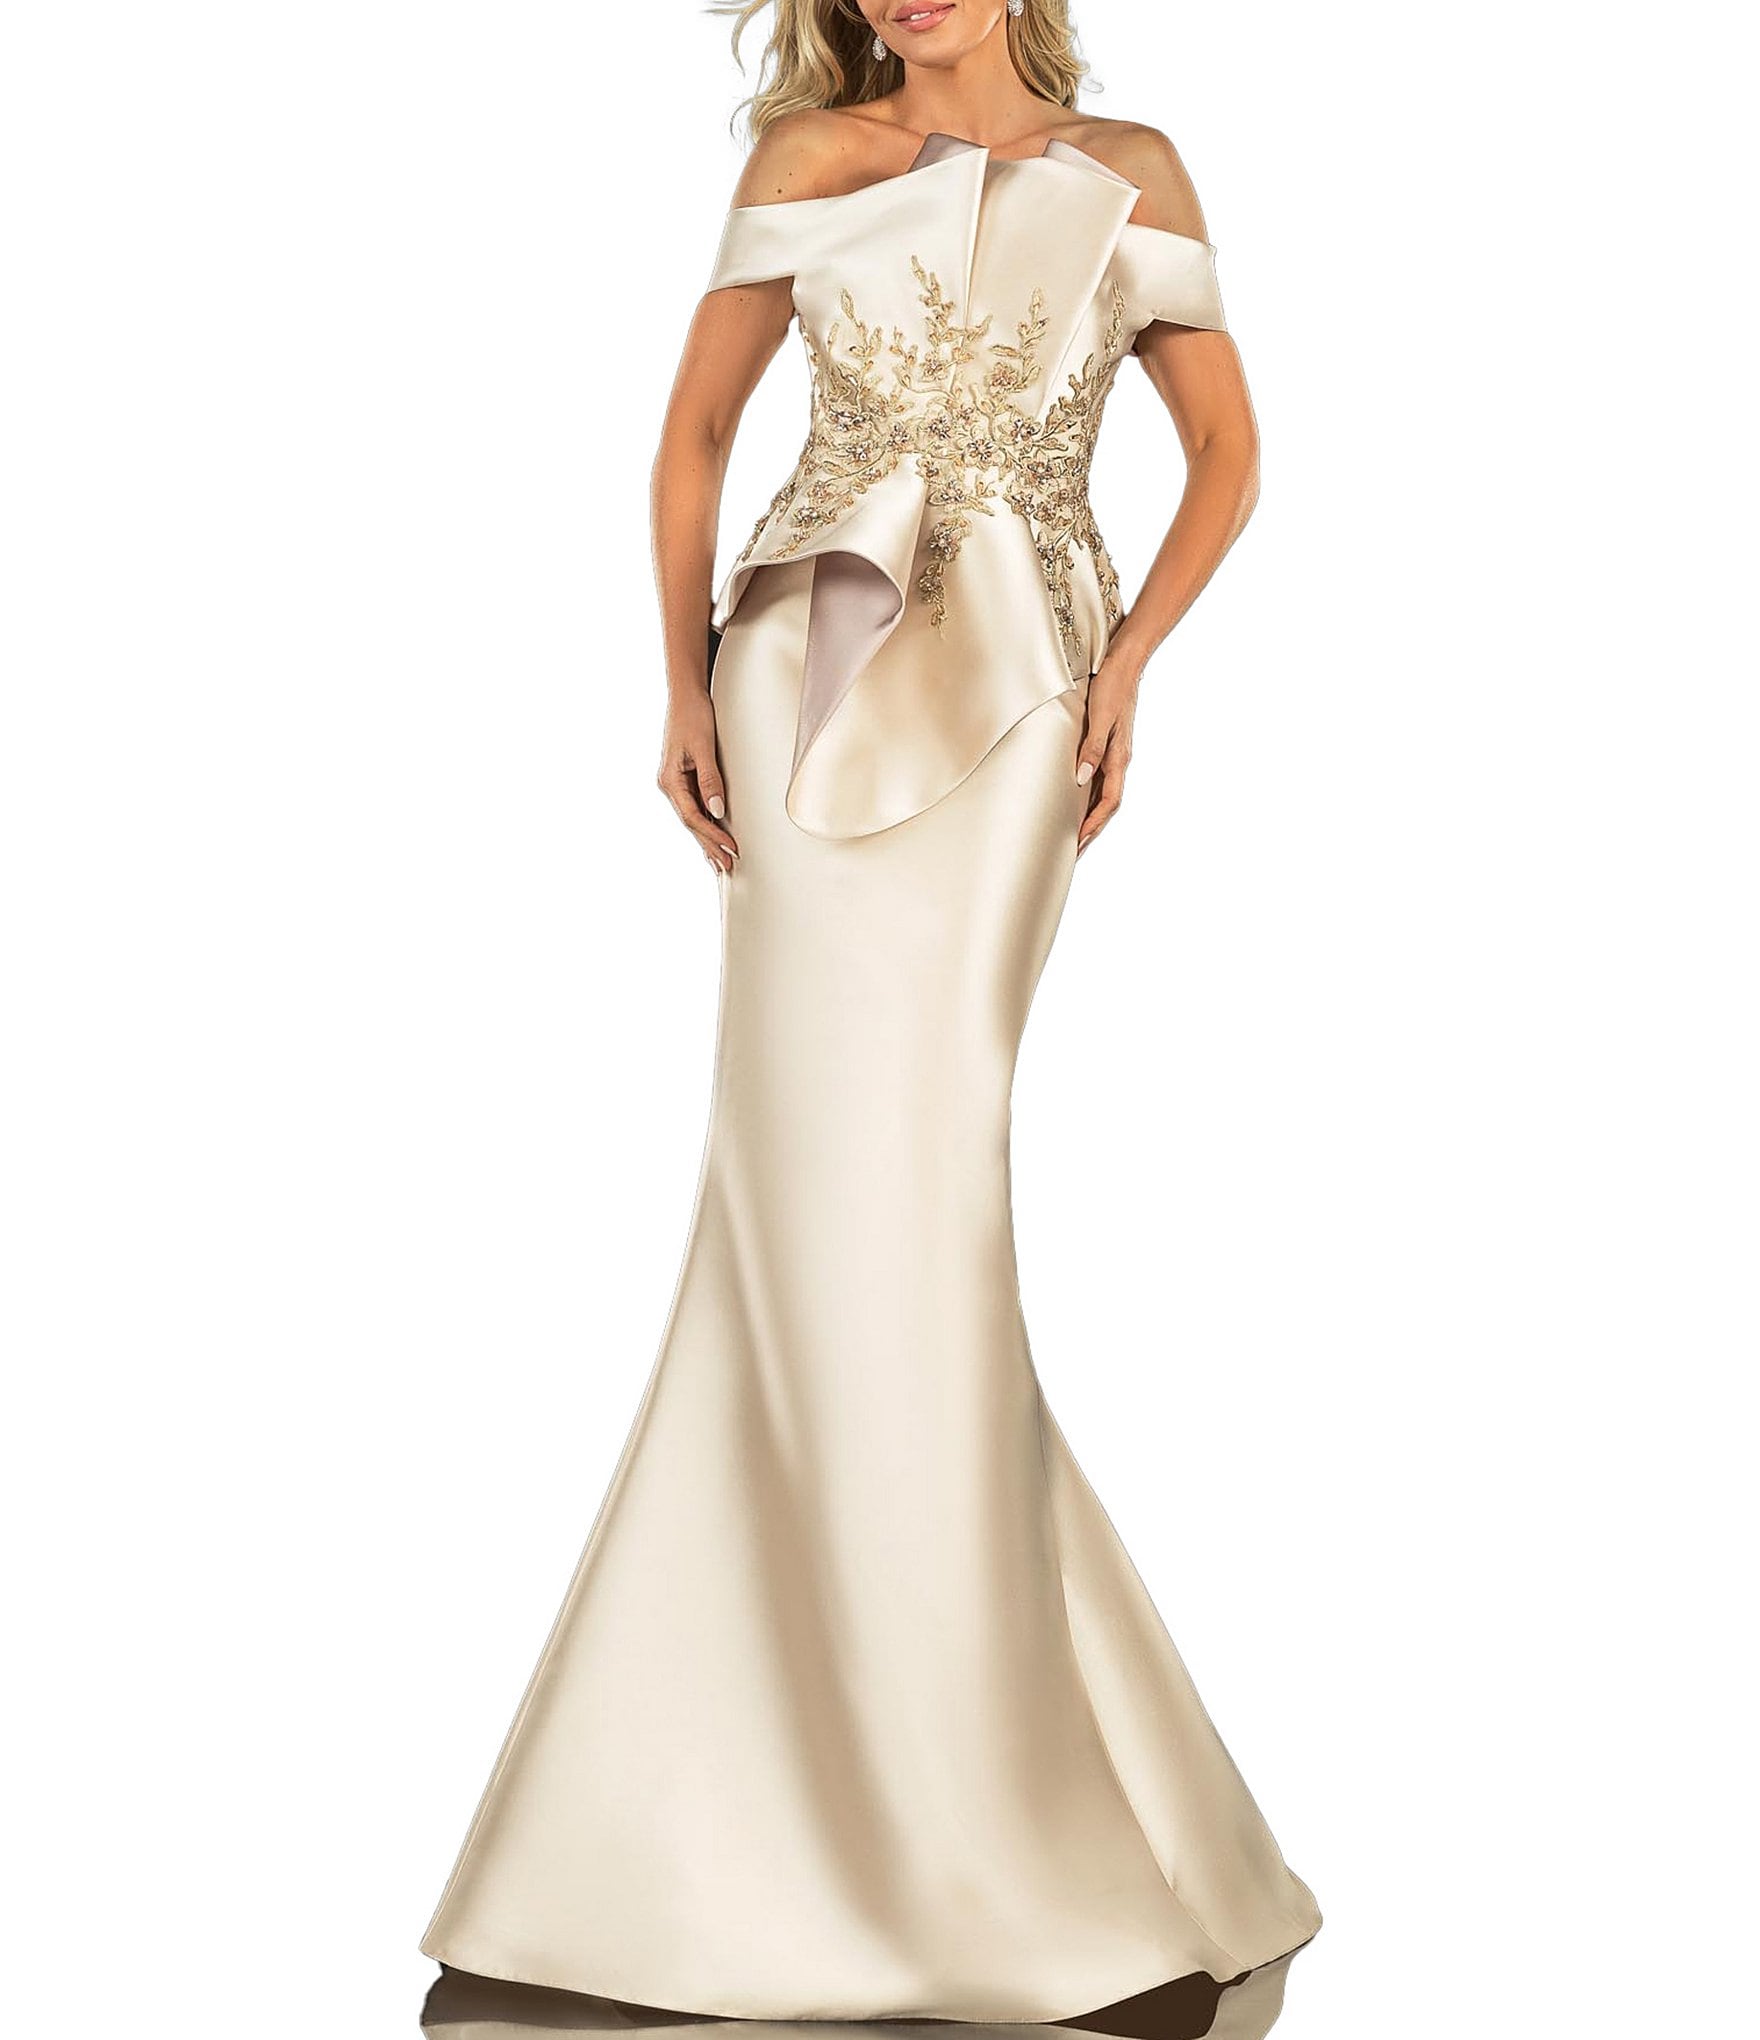 Fancy Sleek Formal Evening Gown E1043 | Sleek dress, Evening gowns, Evening  dresses long